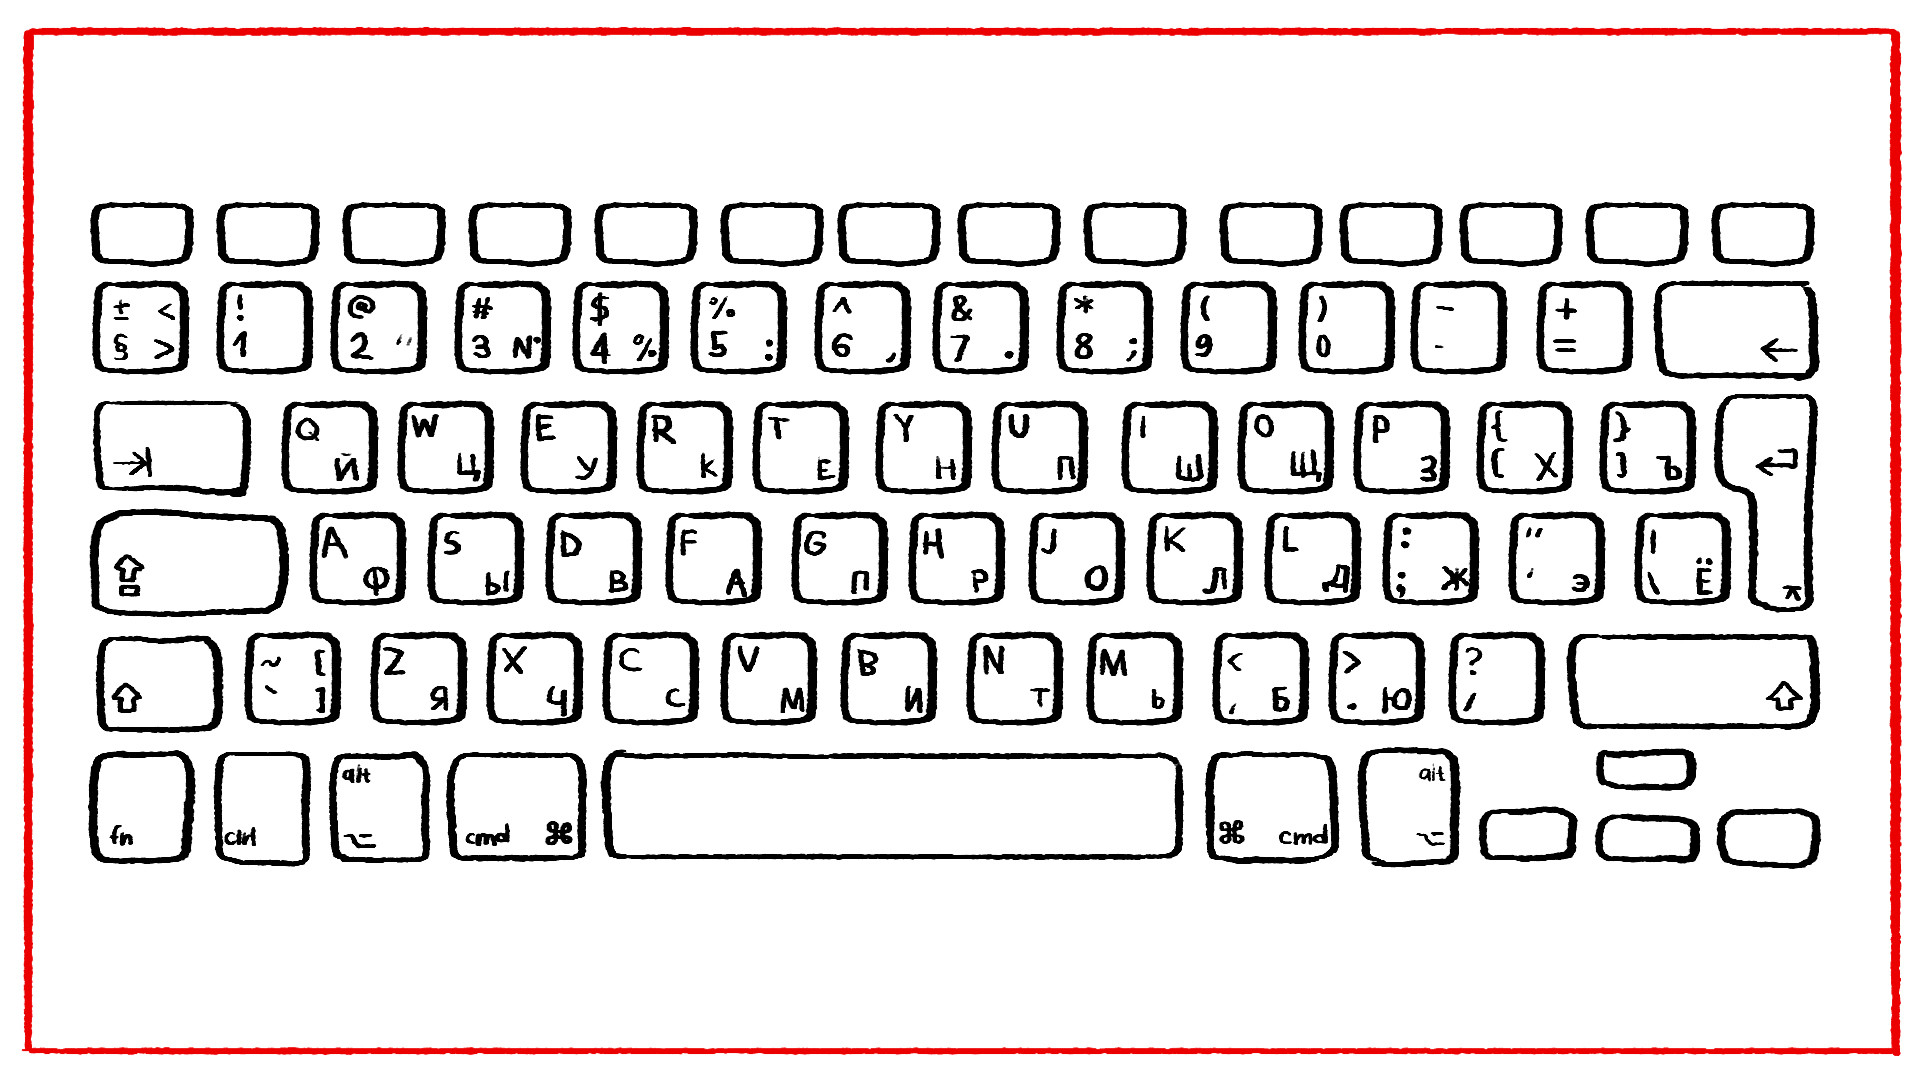 Про раскладка. Компьютерная клавиатура раскладка русская и английская. Распечатка клавиатуры компьютера. Клавиатура для раскрашивания. Клавиатура компьютера раскраска.